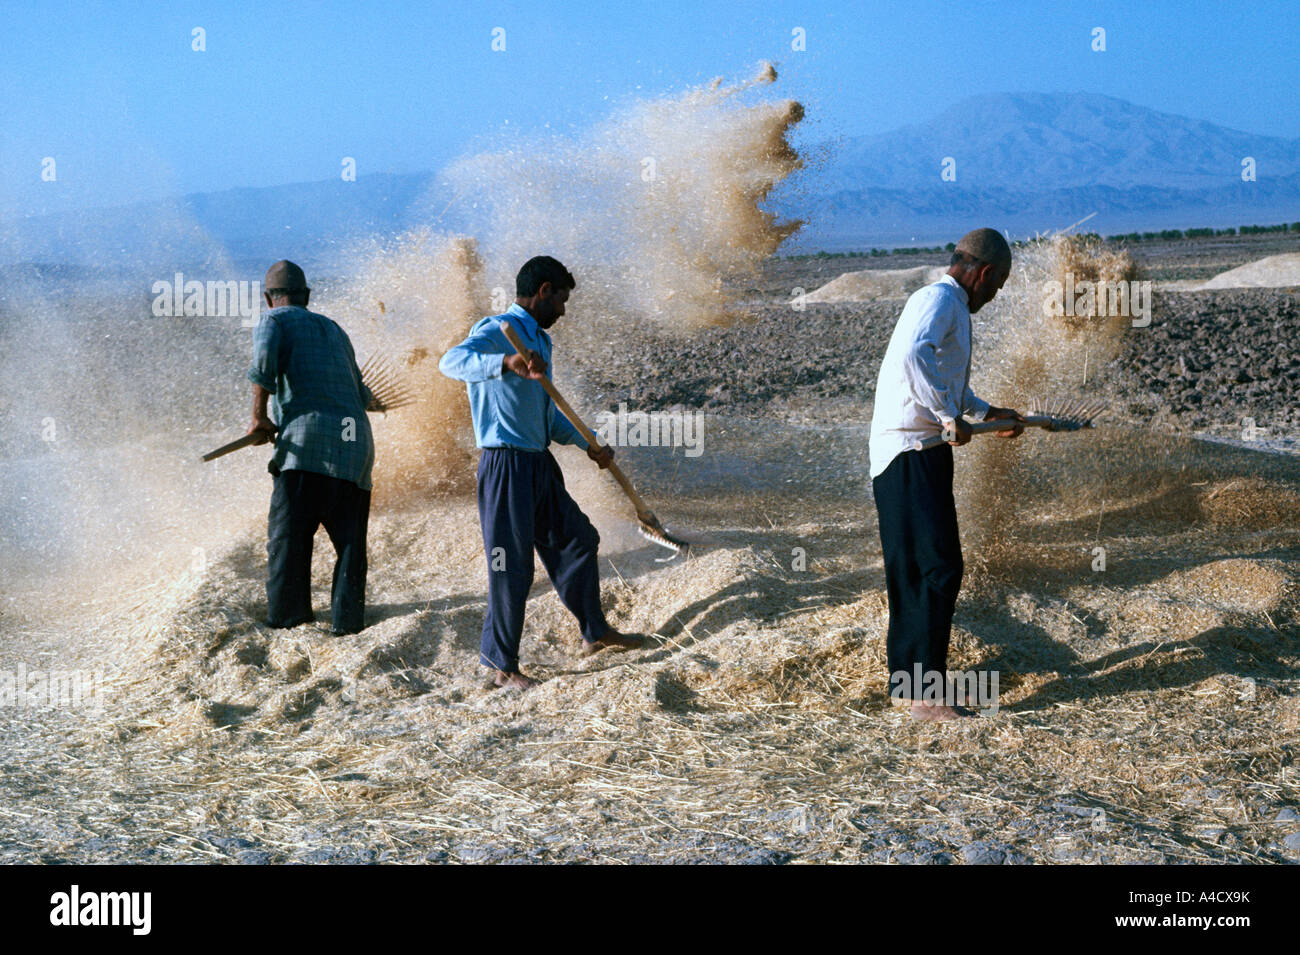 Trois hommes le vannage, Khurasan province, l'Iran Banque D'Images